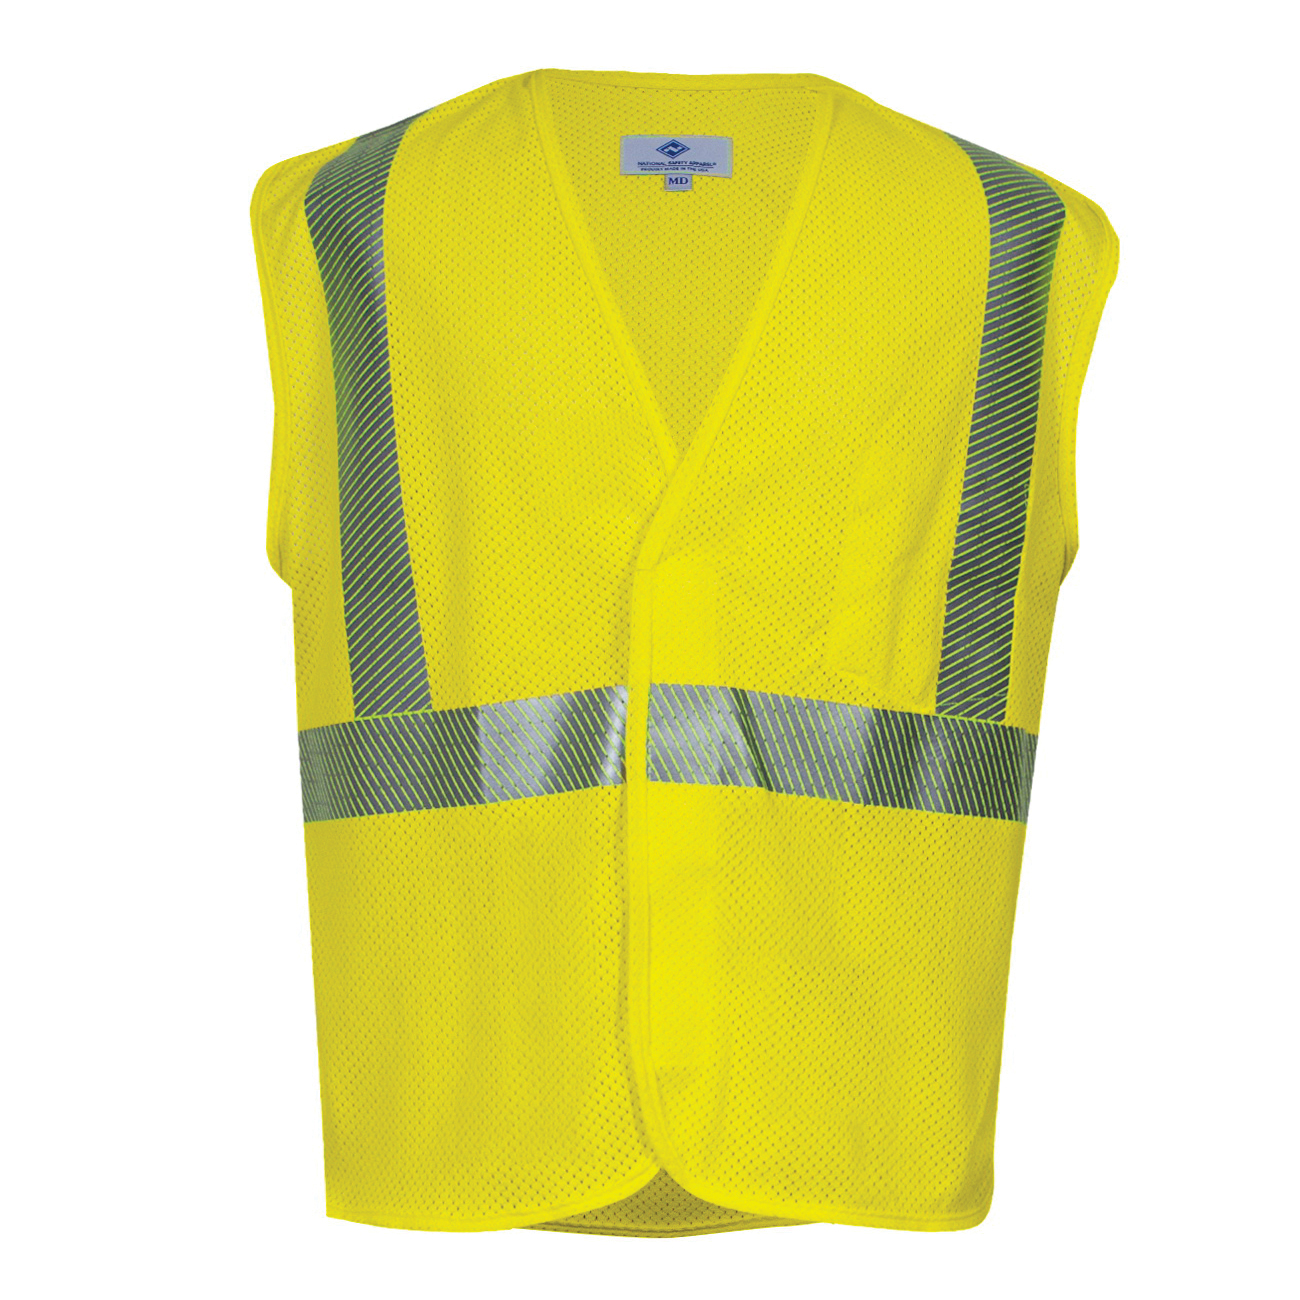 National Safety Apparel V00HA2VLG High Visibility Safety Vests